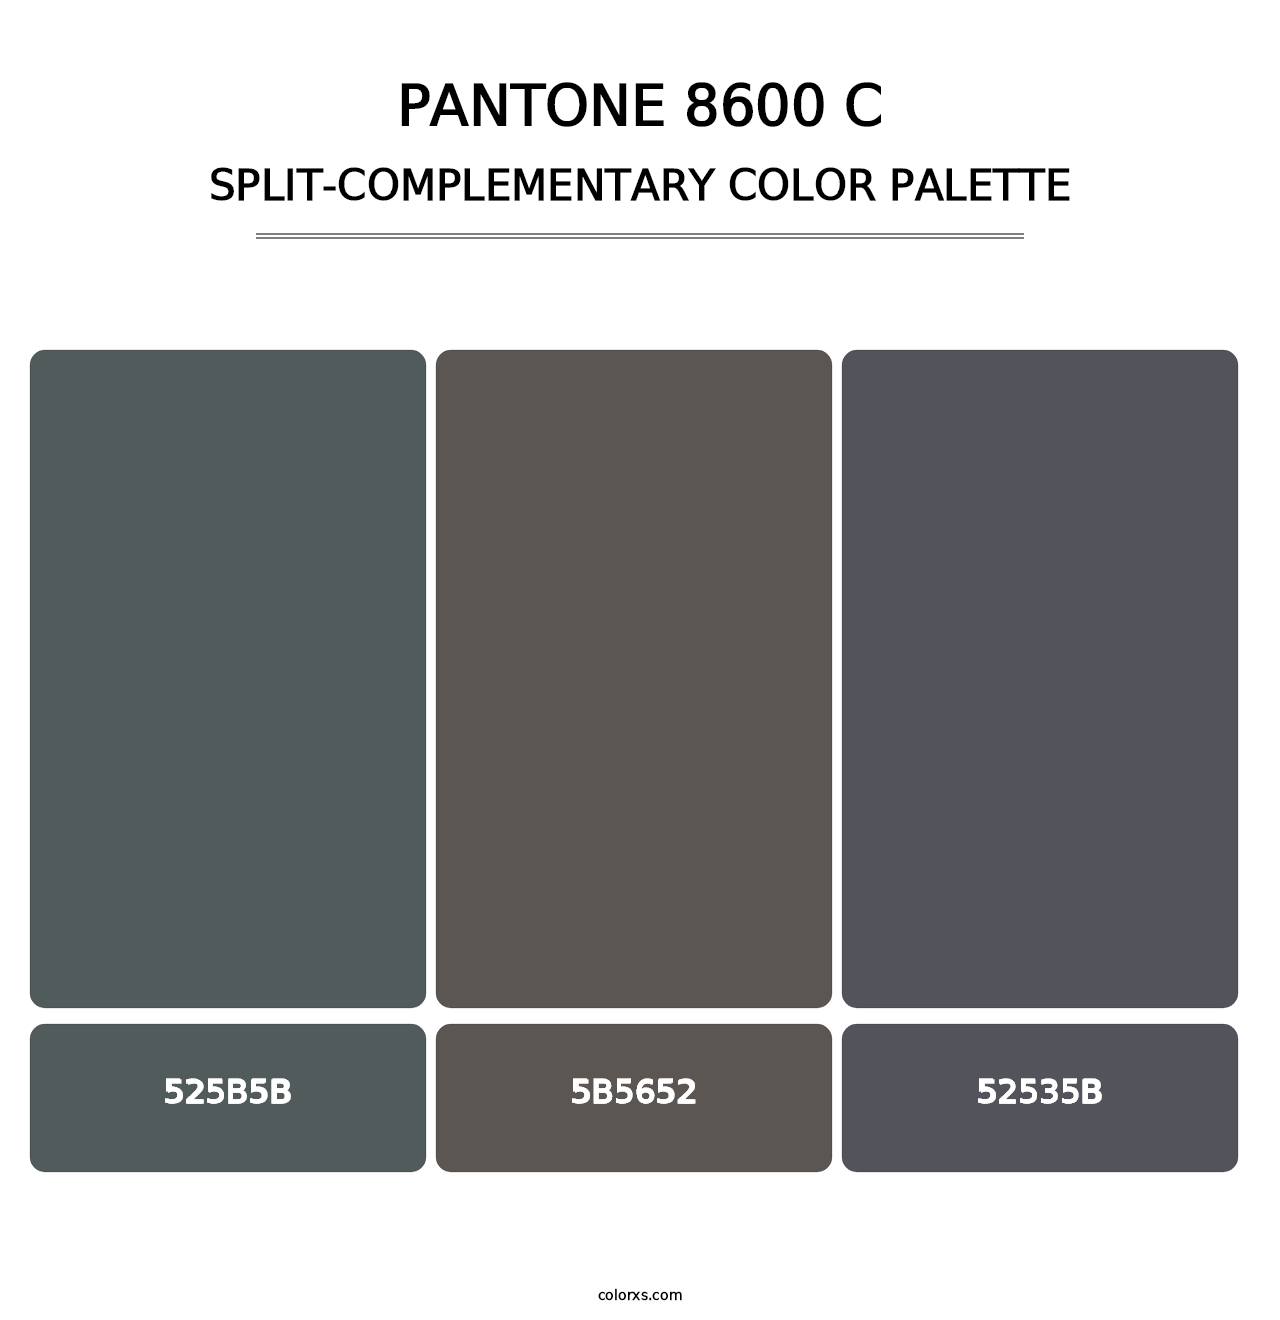 PANTONE 8600 C - Split-Complementary Color Palette